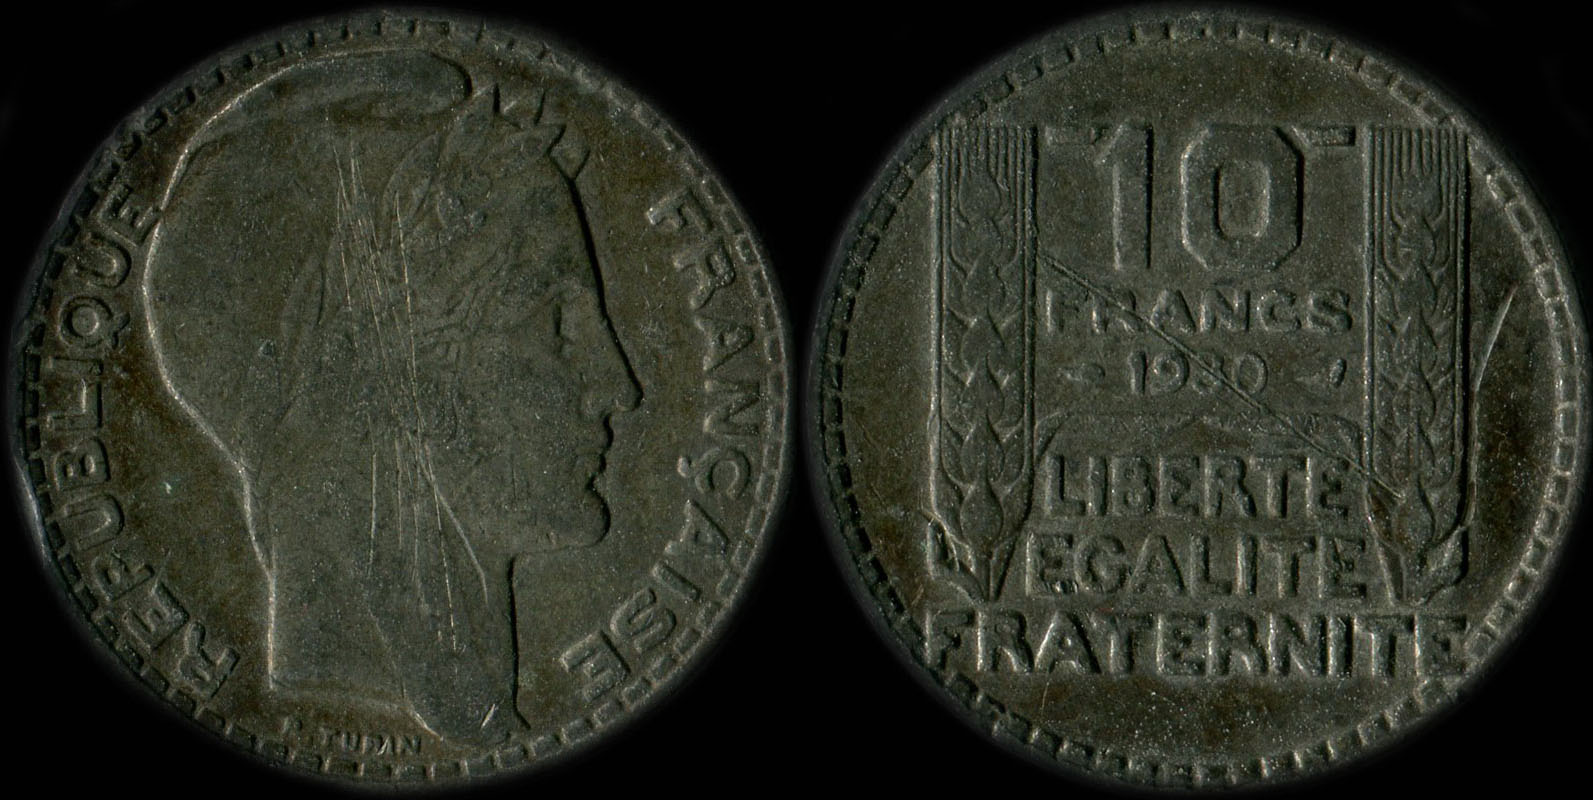 Pièce de 10 francs Turin 1930 (fausse en maillechort?)